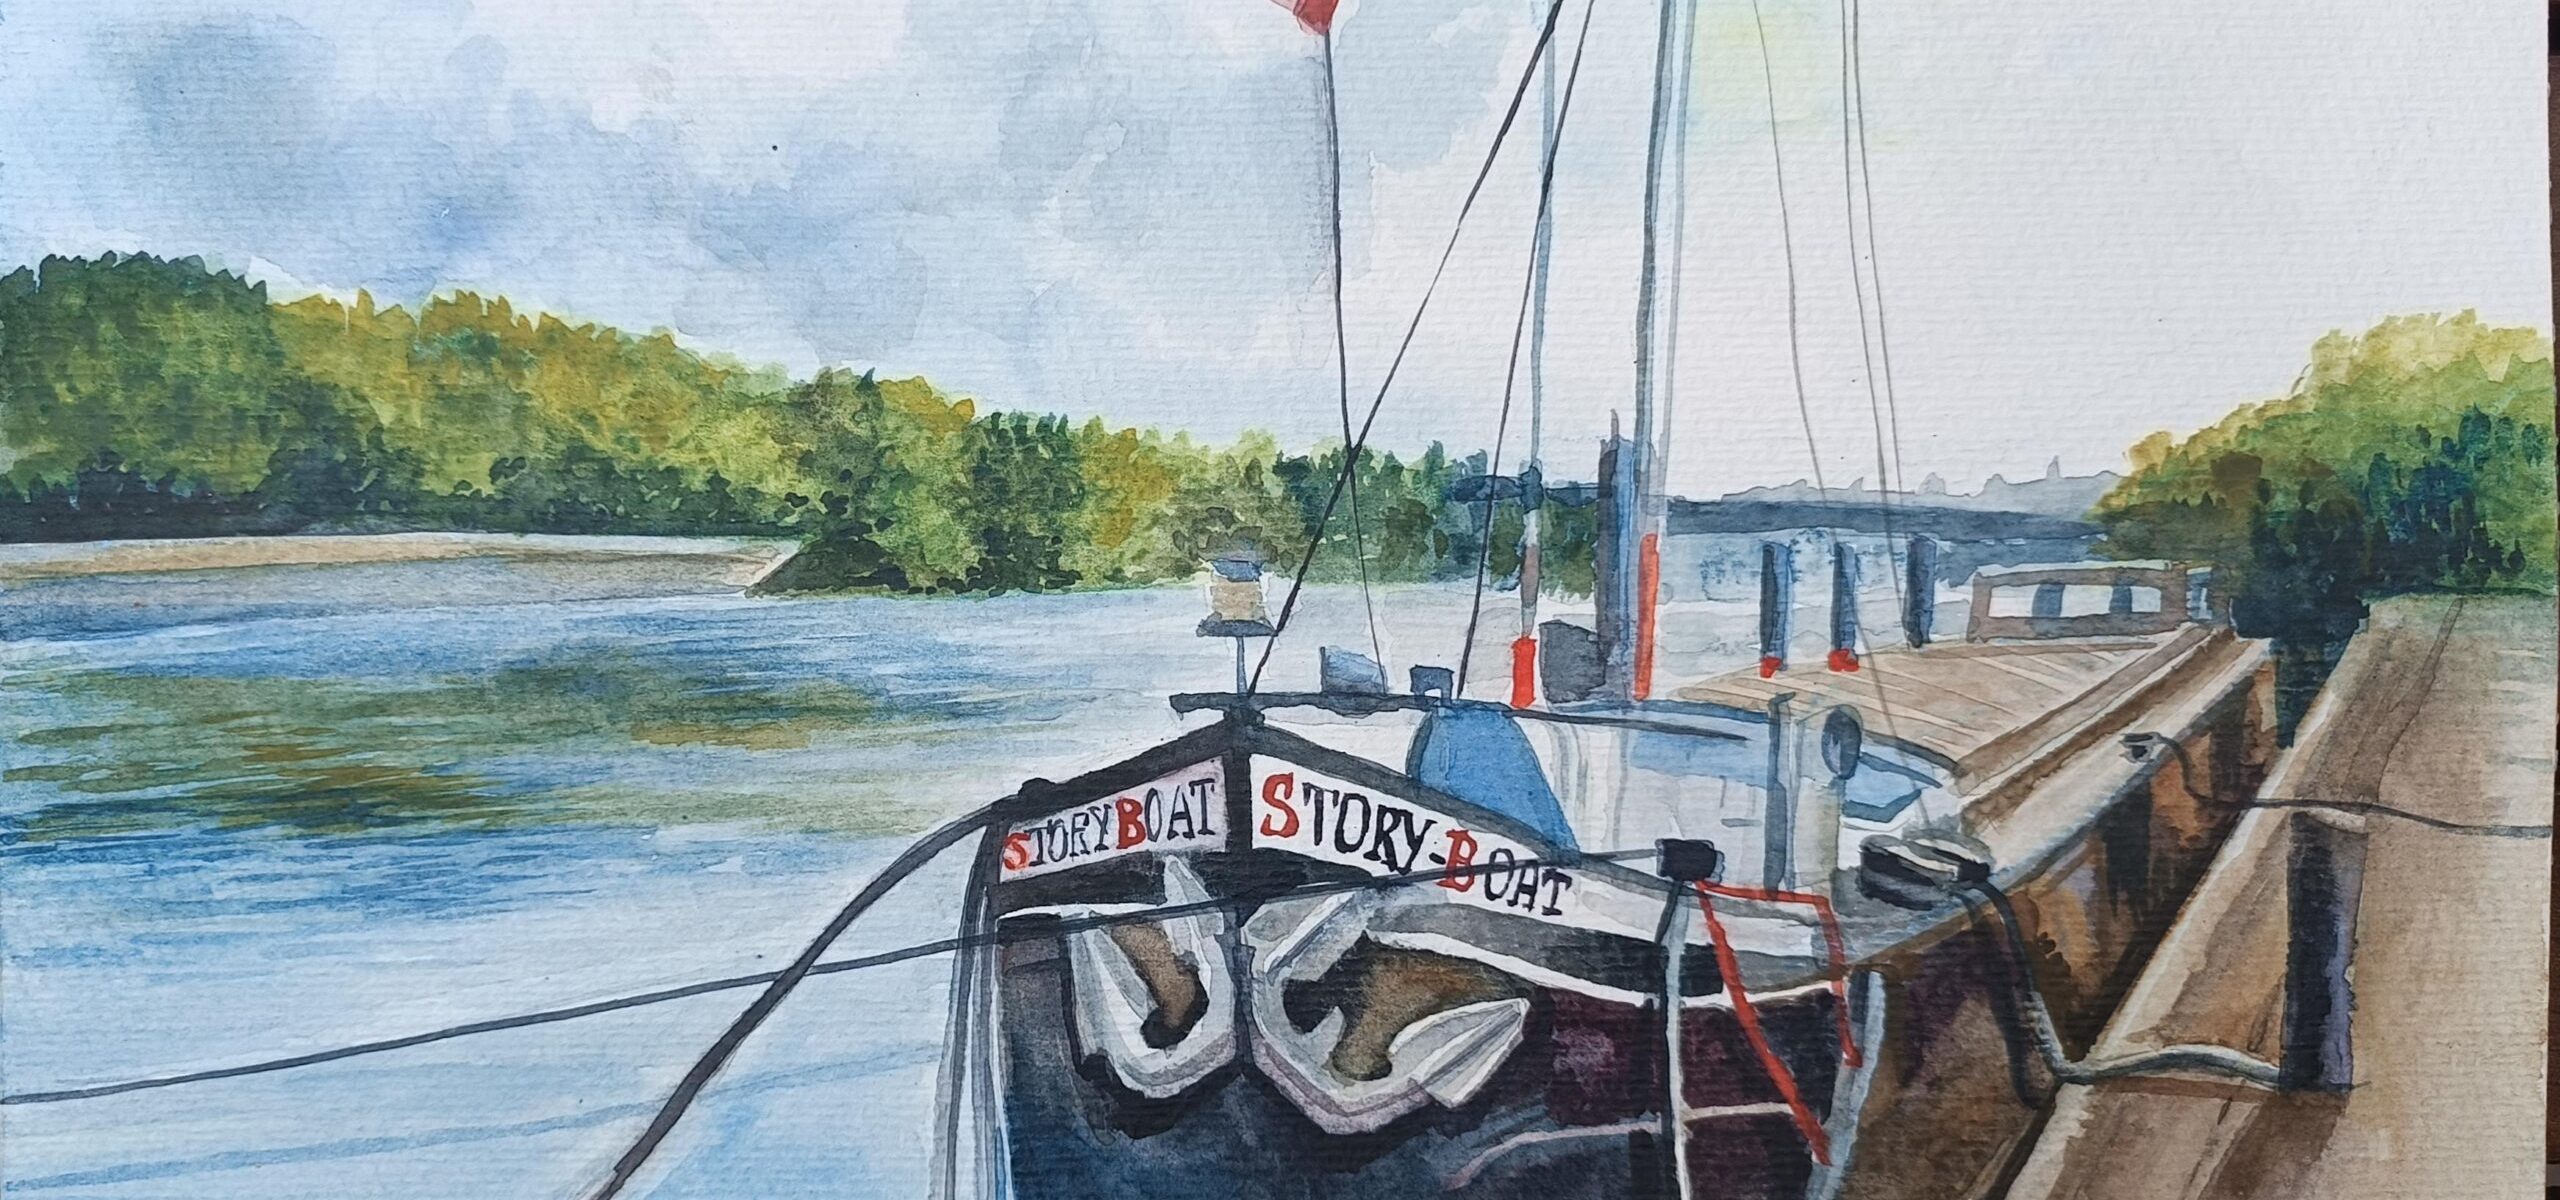 Le Story Boat, le bateau théâtre de Conflans Sainte Honorine (aquarelle)